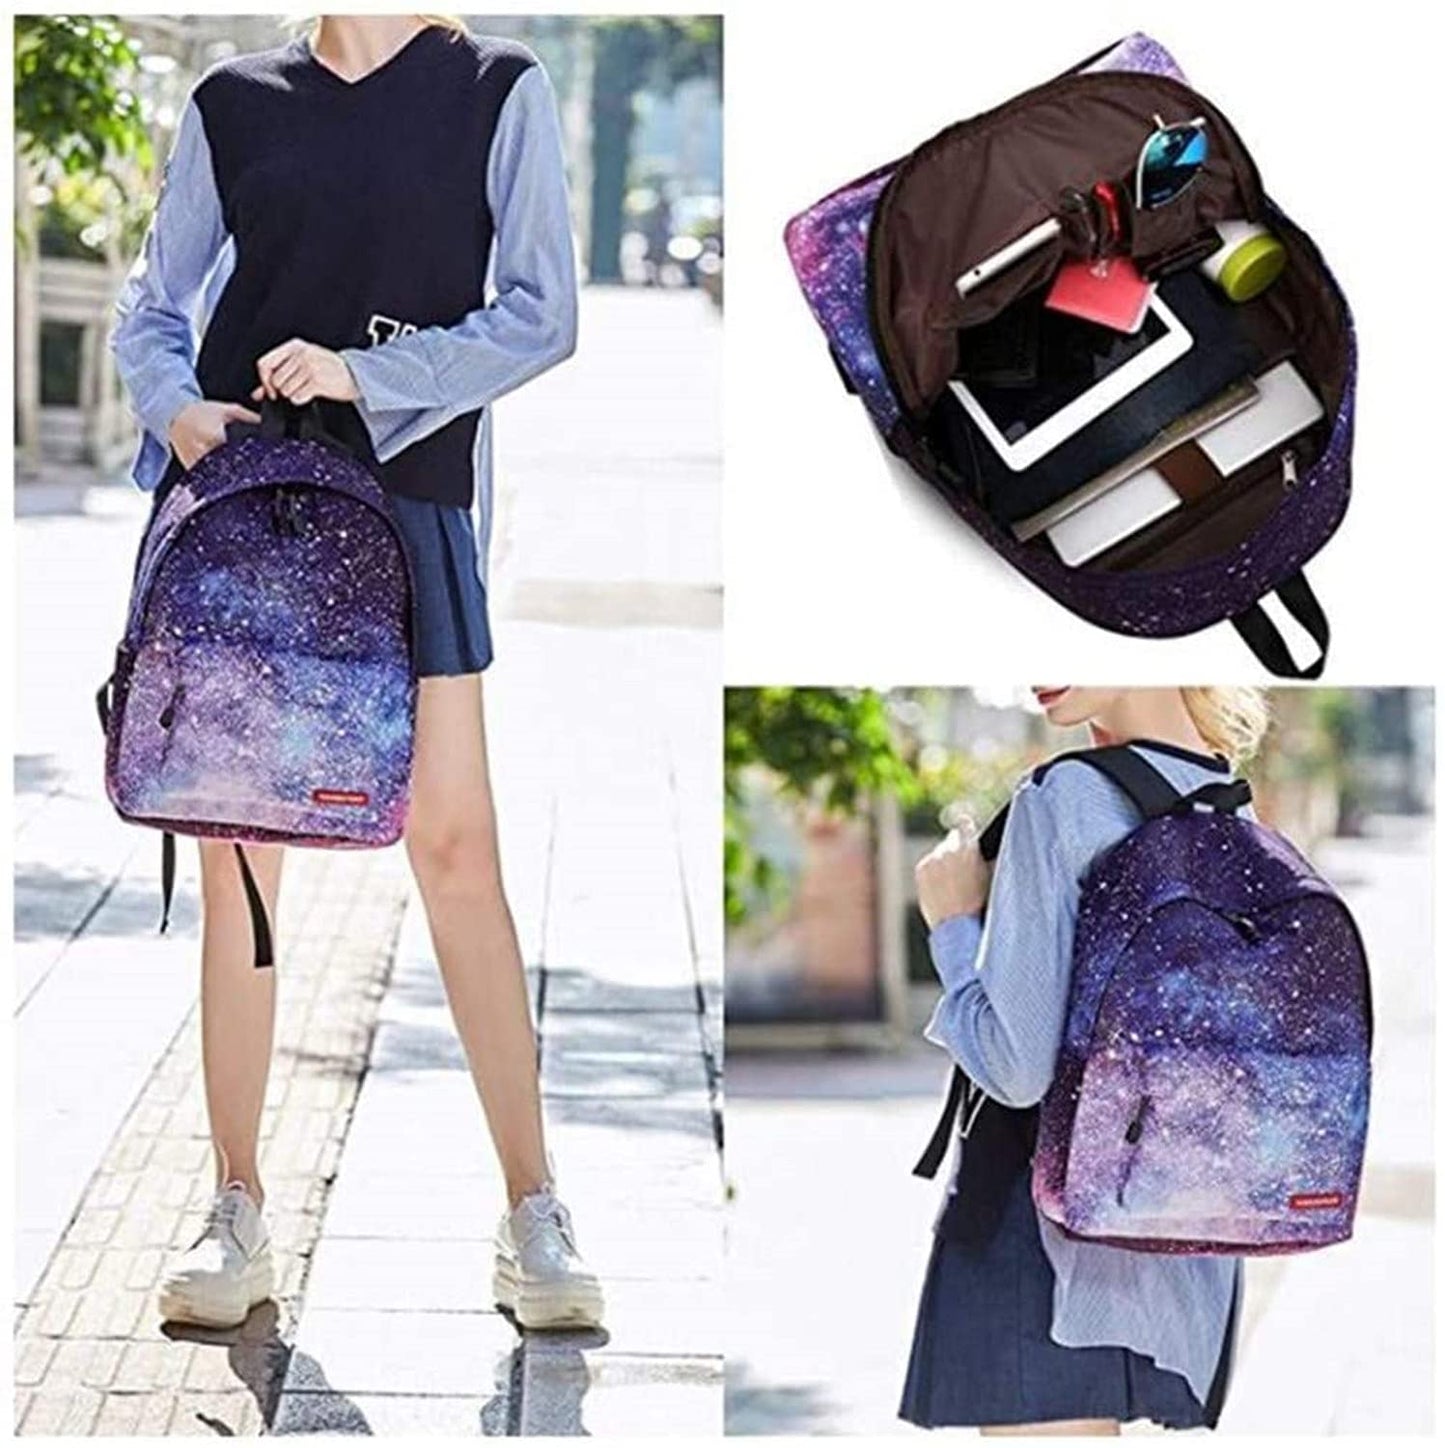 Galaxy School Bag Backpack for Teen Teenage Student